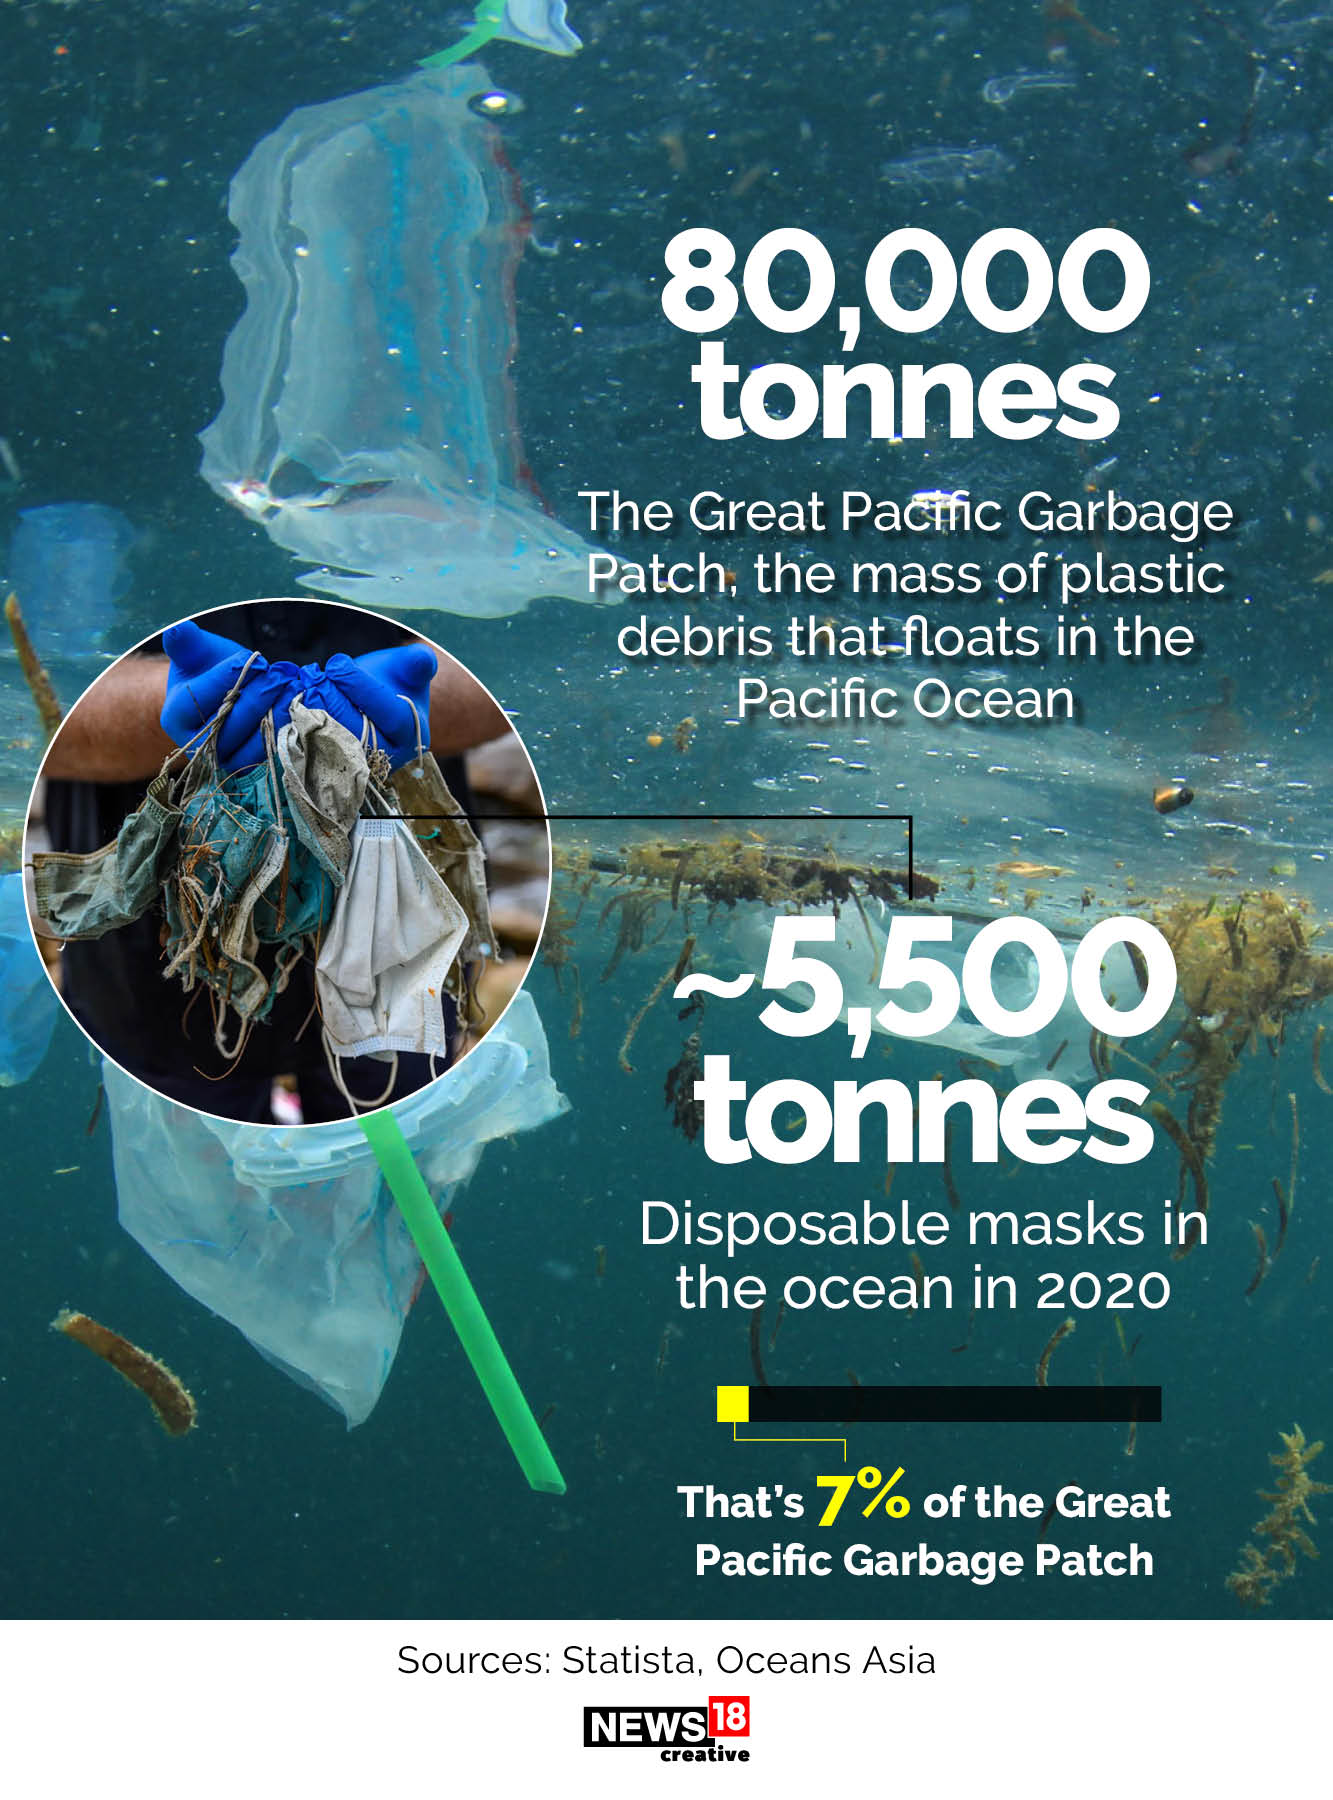 Our oceans now have 1.56 billion disposable face masks